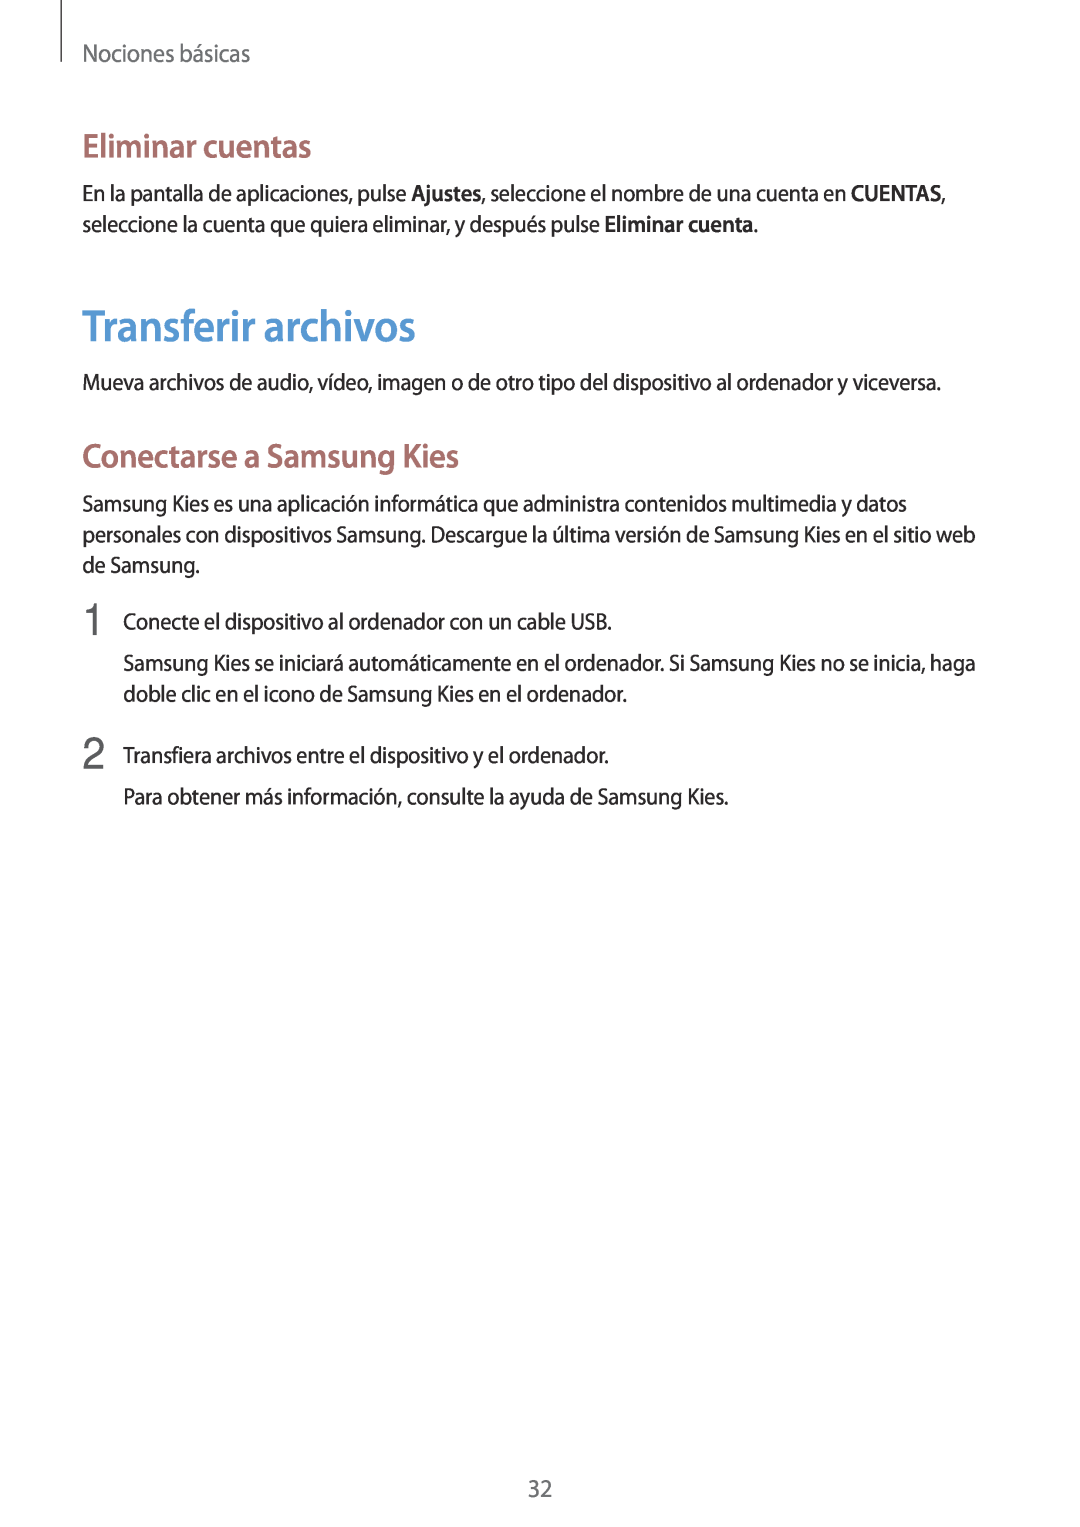 Samsung GT-P5200ZWAAMN, GT-P5200MKADBT Transferir archivos, Eliminar cuentas, Conectarse a Samsung Kies, Nociones básicas 